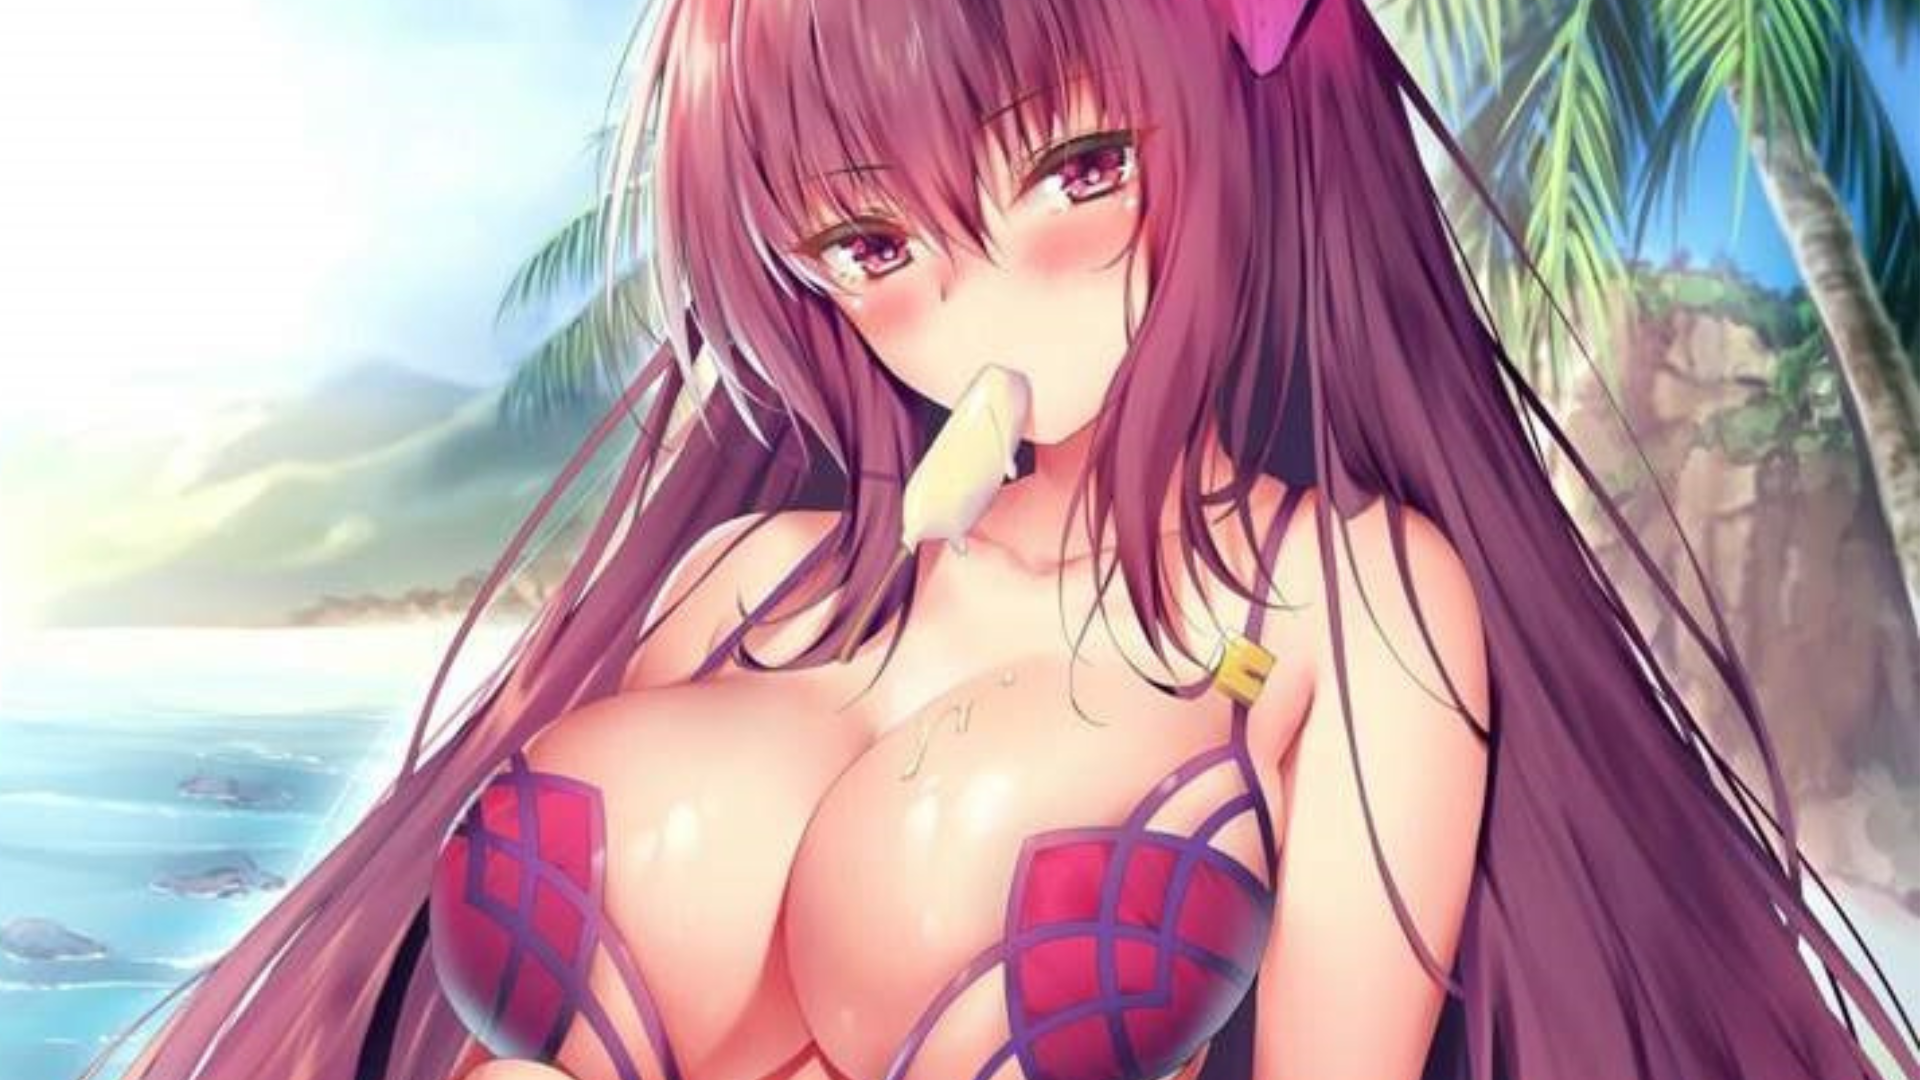 A sexy anime girl wearing sexy bikini while on the beach